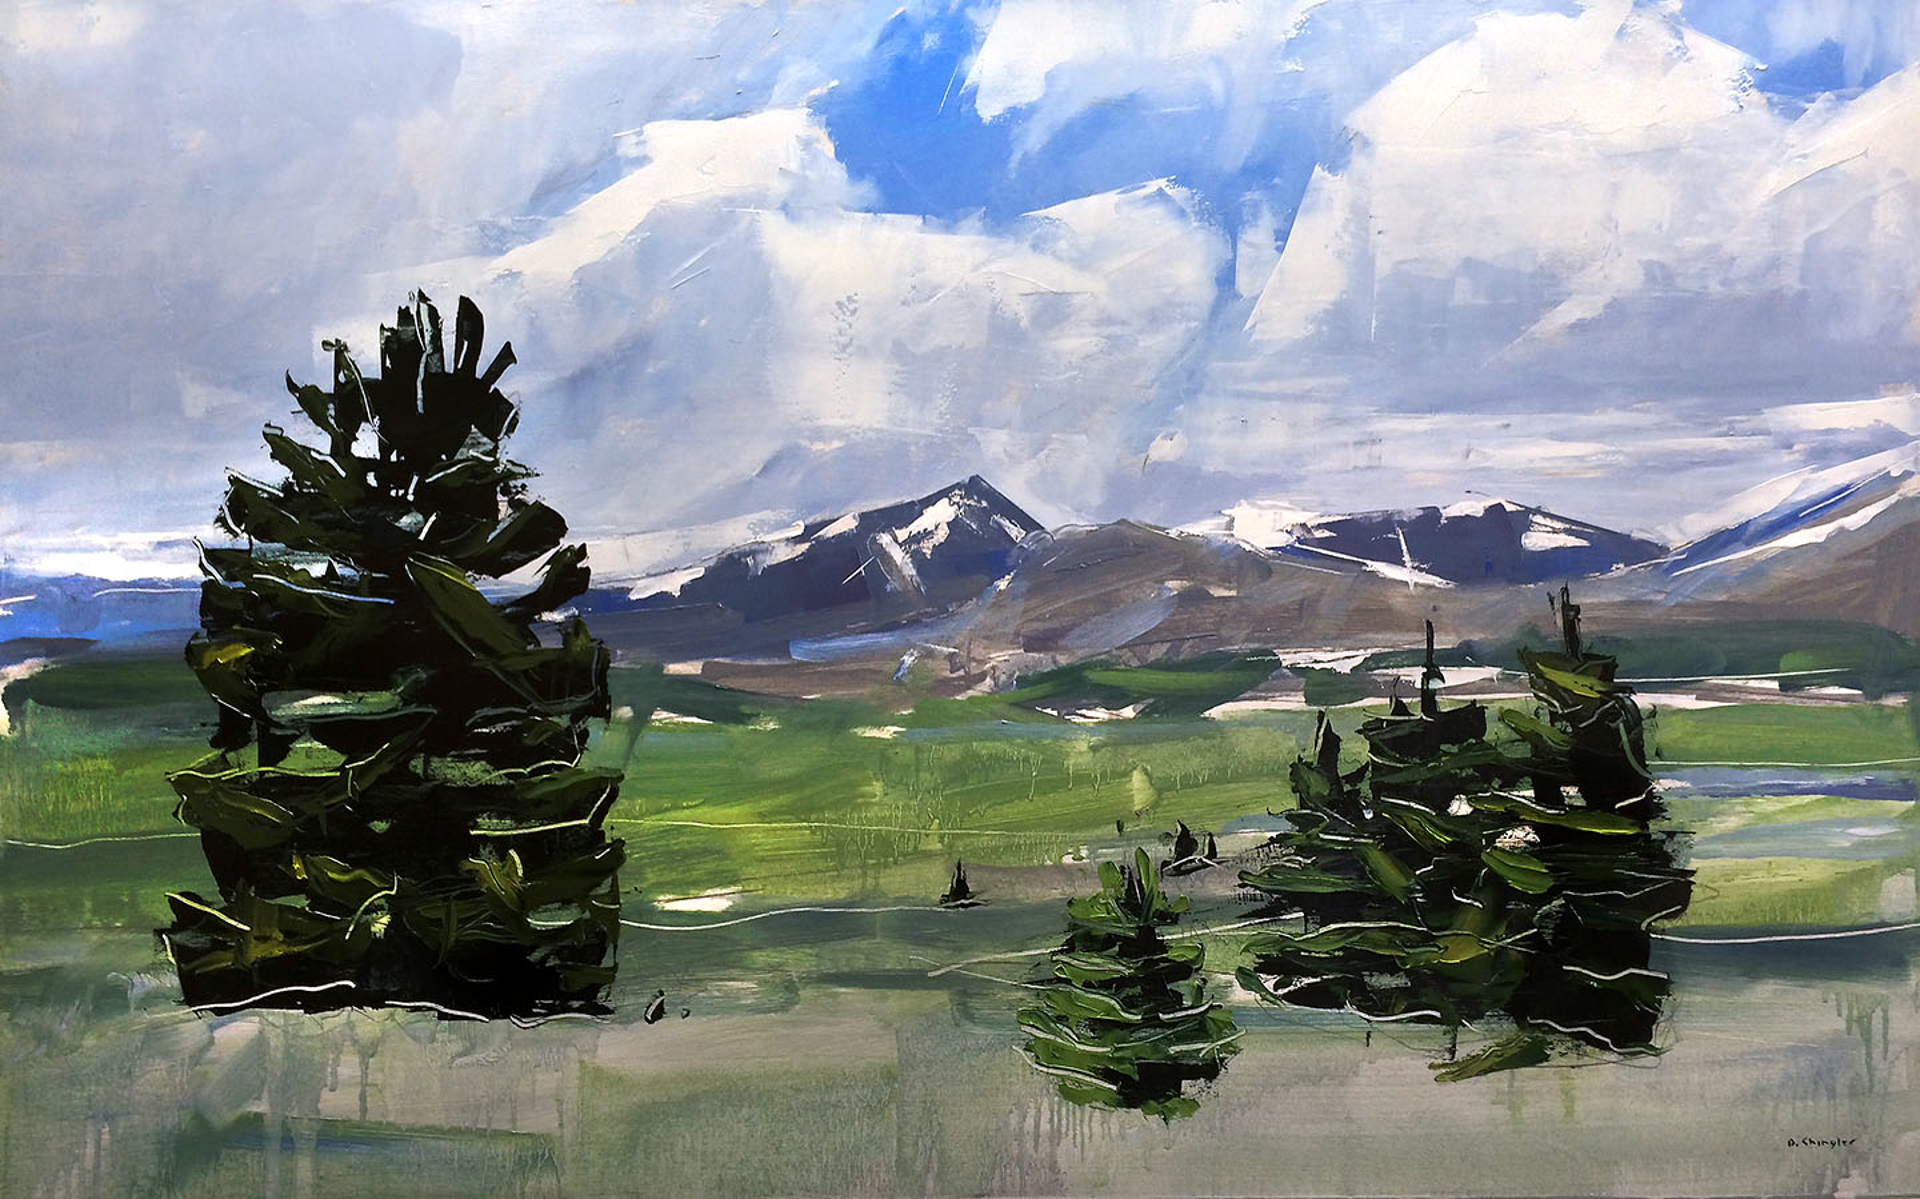 Mt. Evans and Bierstadt, Colorado by David Shingler